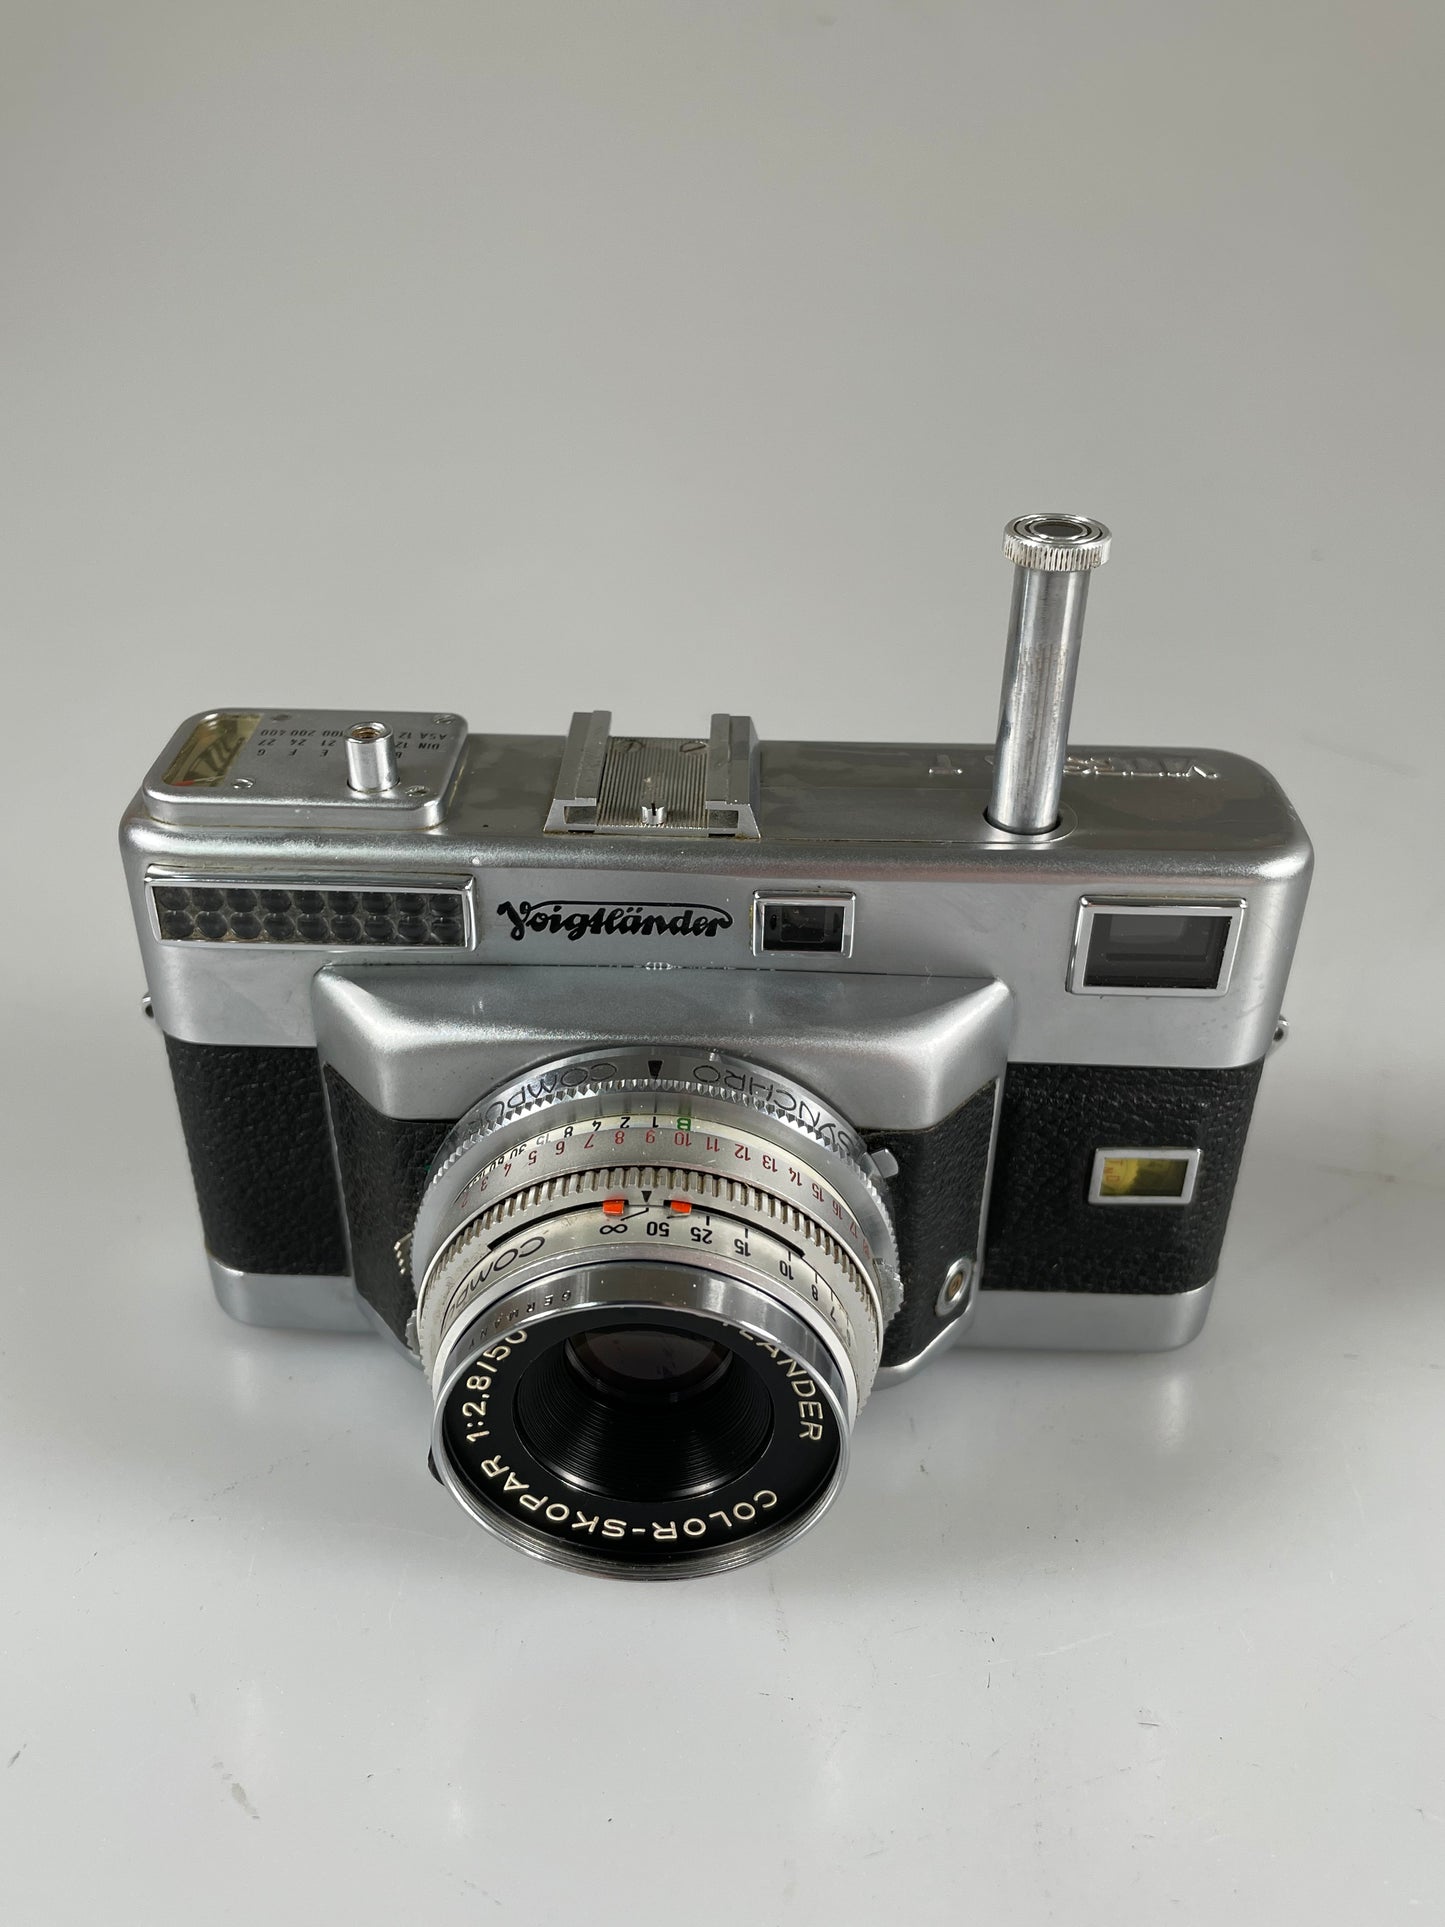 Voigtlander Vitessa T 35mm Film Camera w/ Color Skopar 50mm f2.8 Lens